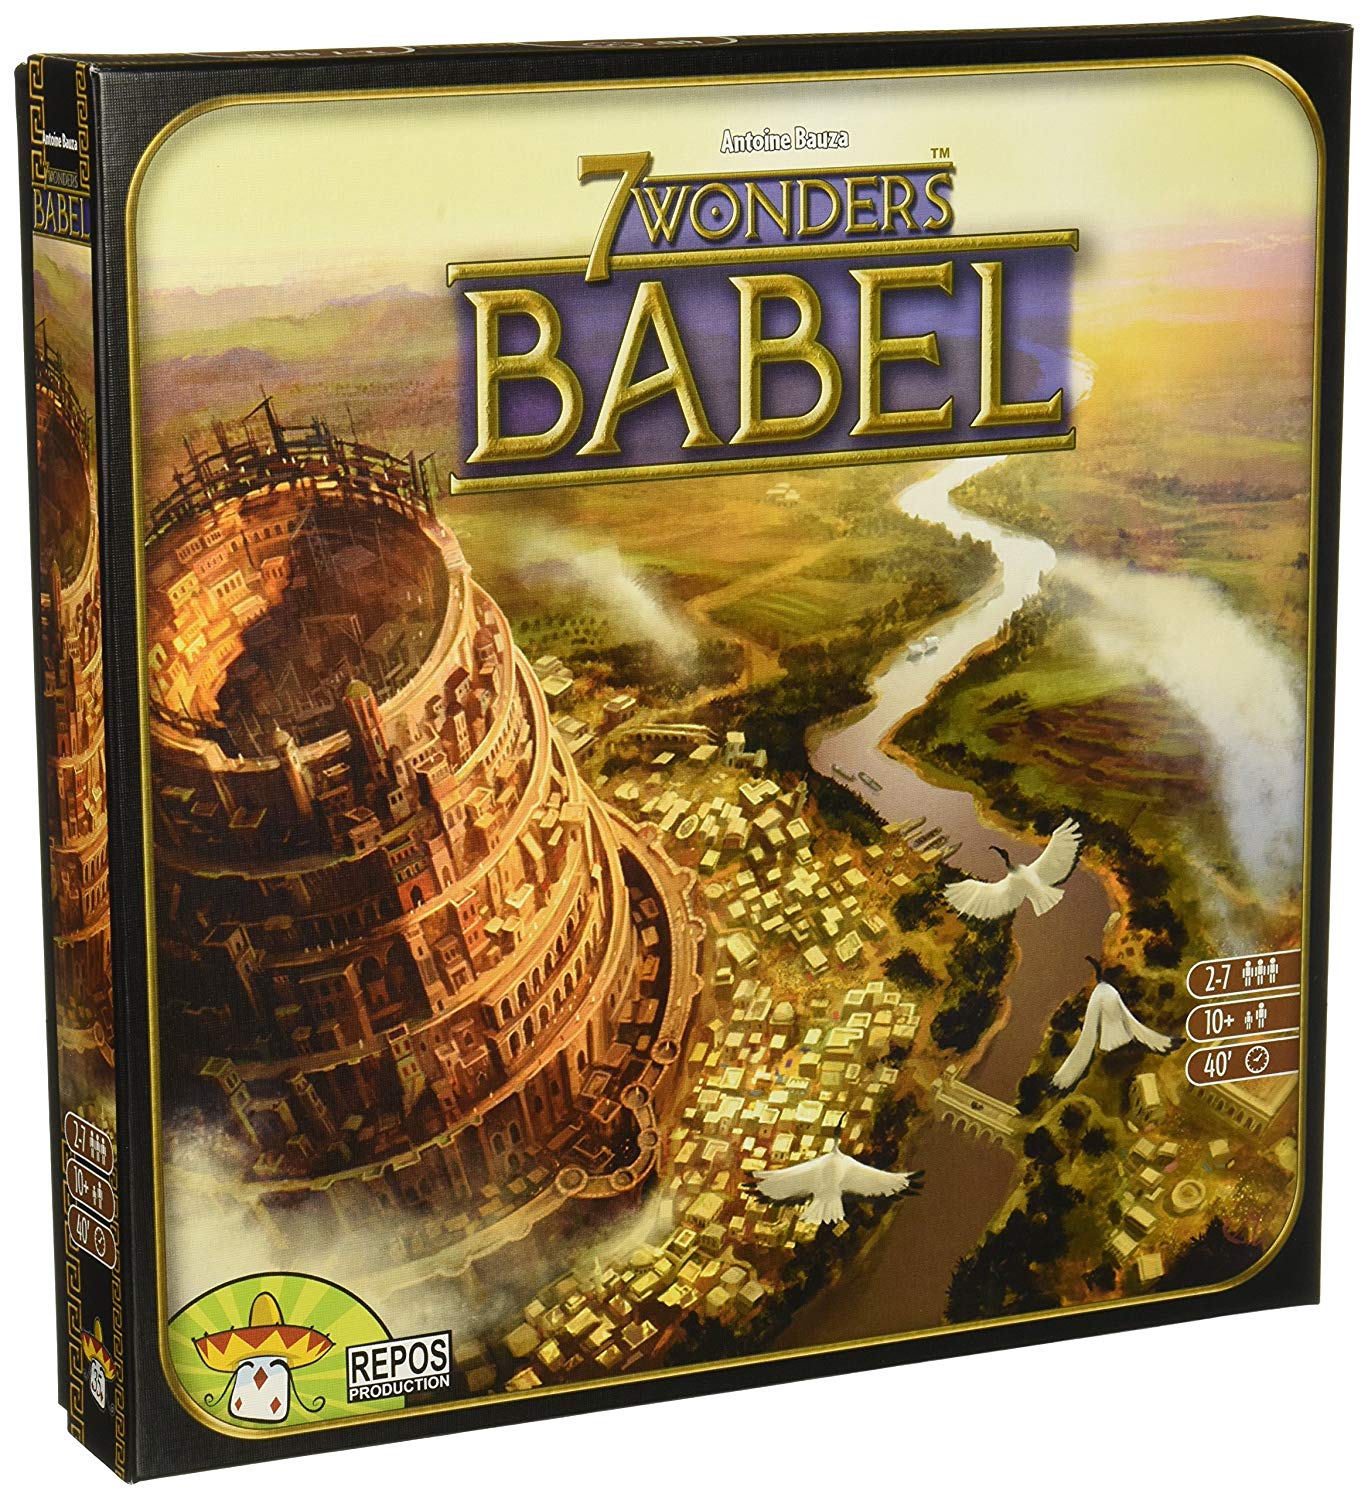 7 Wonders Babel | L.A. Mood Comics and Games